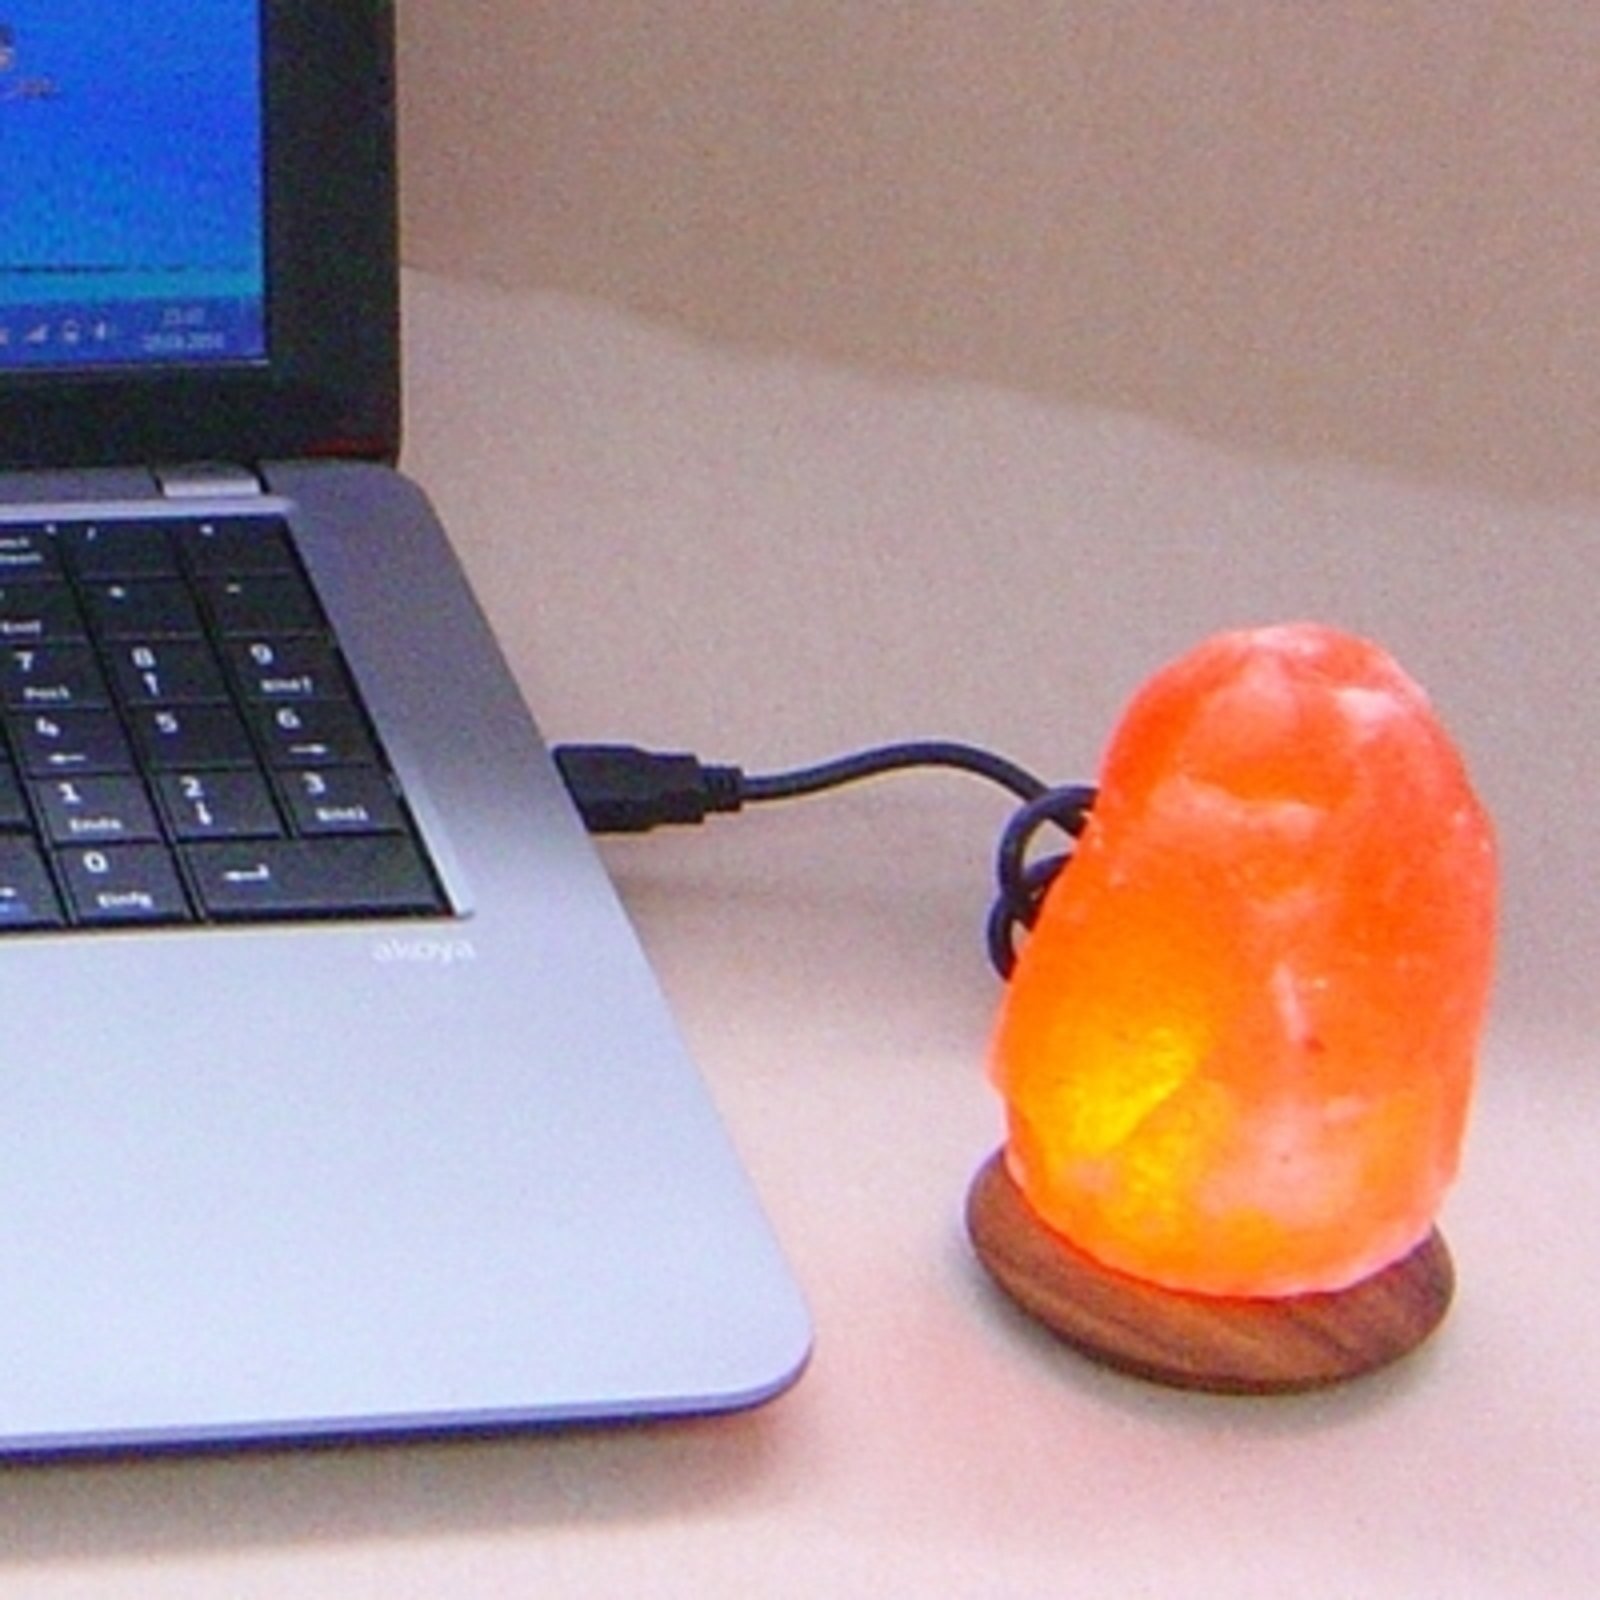 Compus LED sólámpa, USB-s számítógéphez/laptophoz